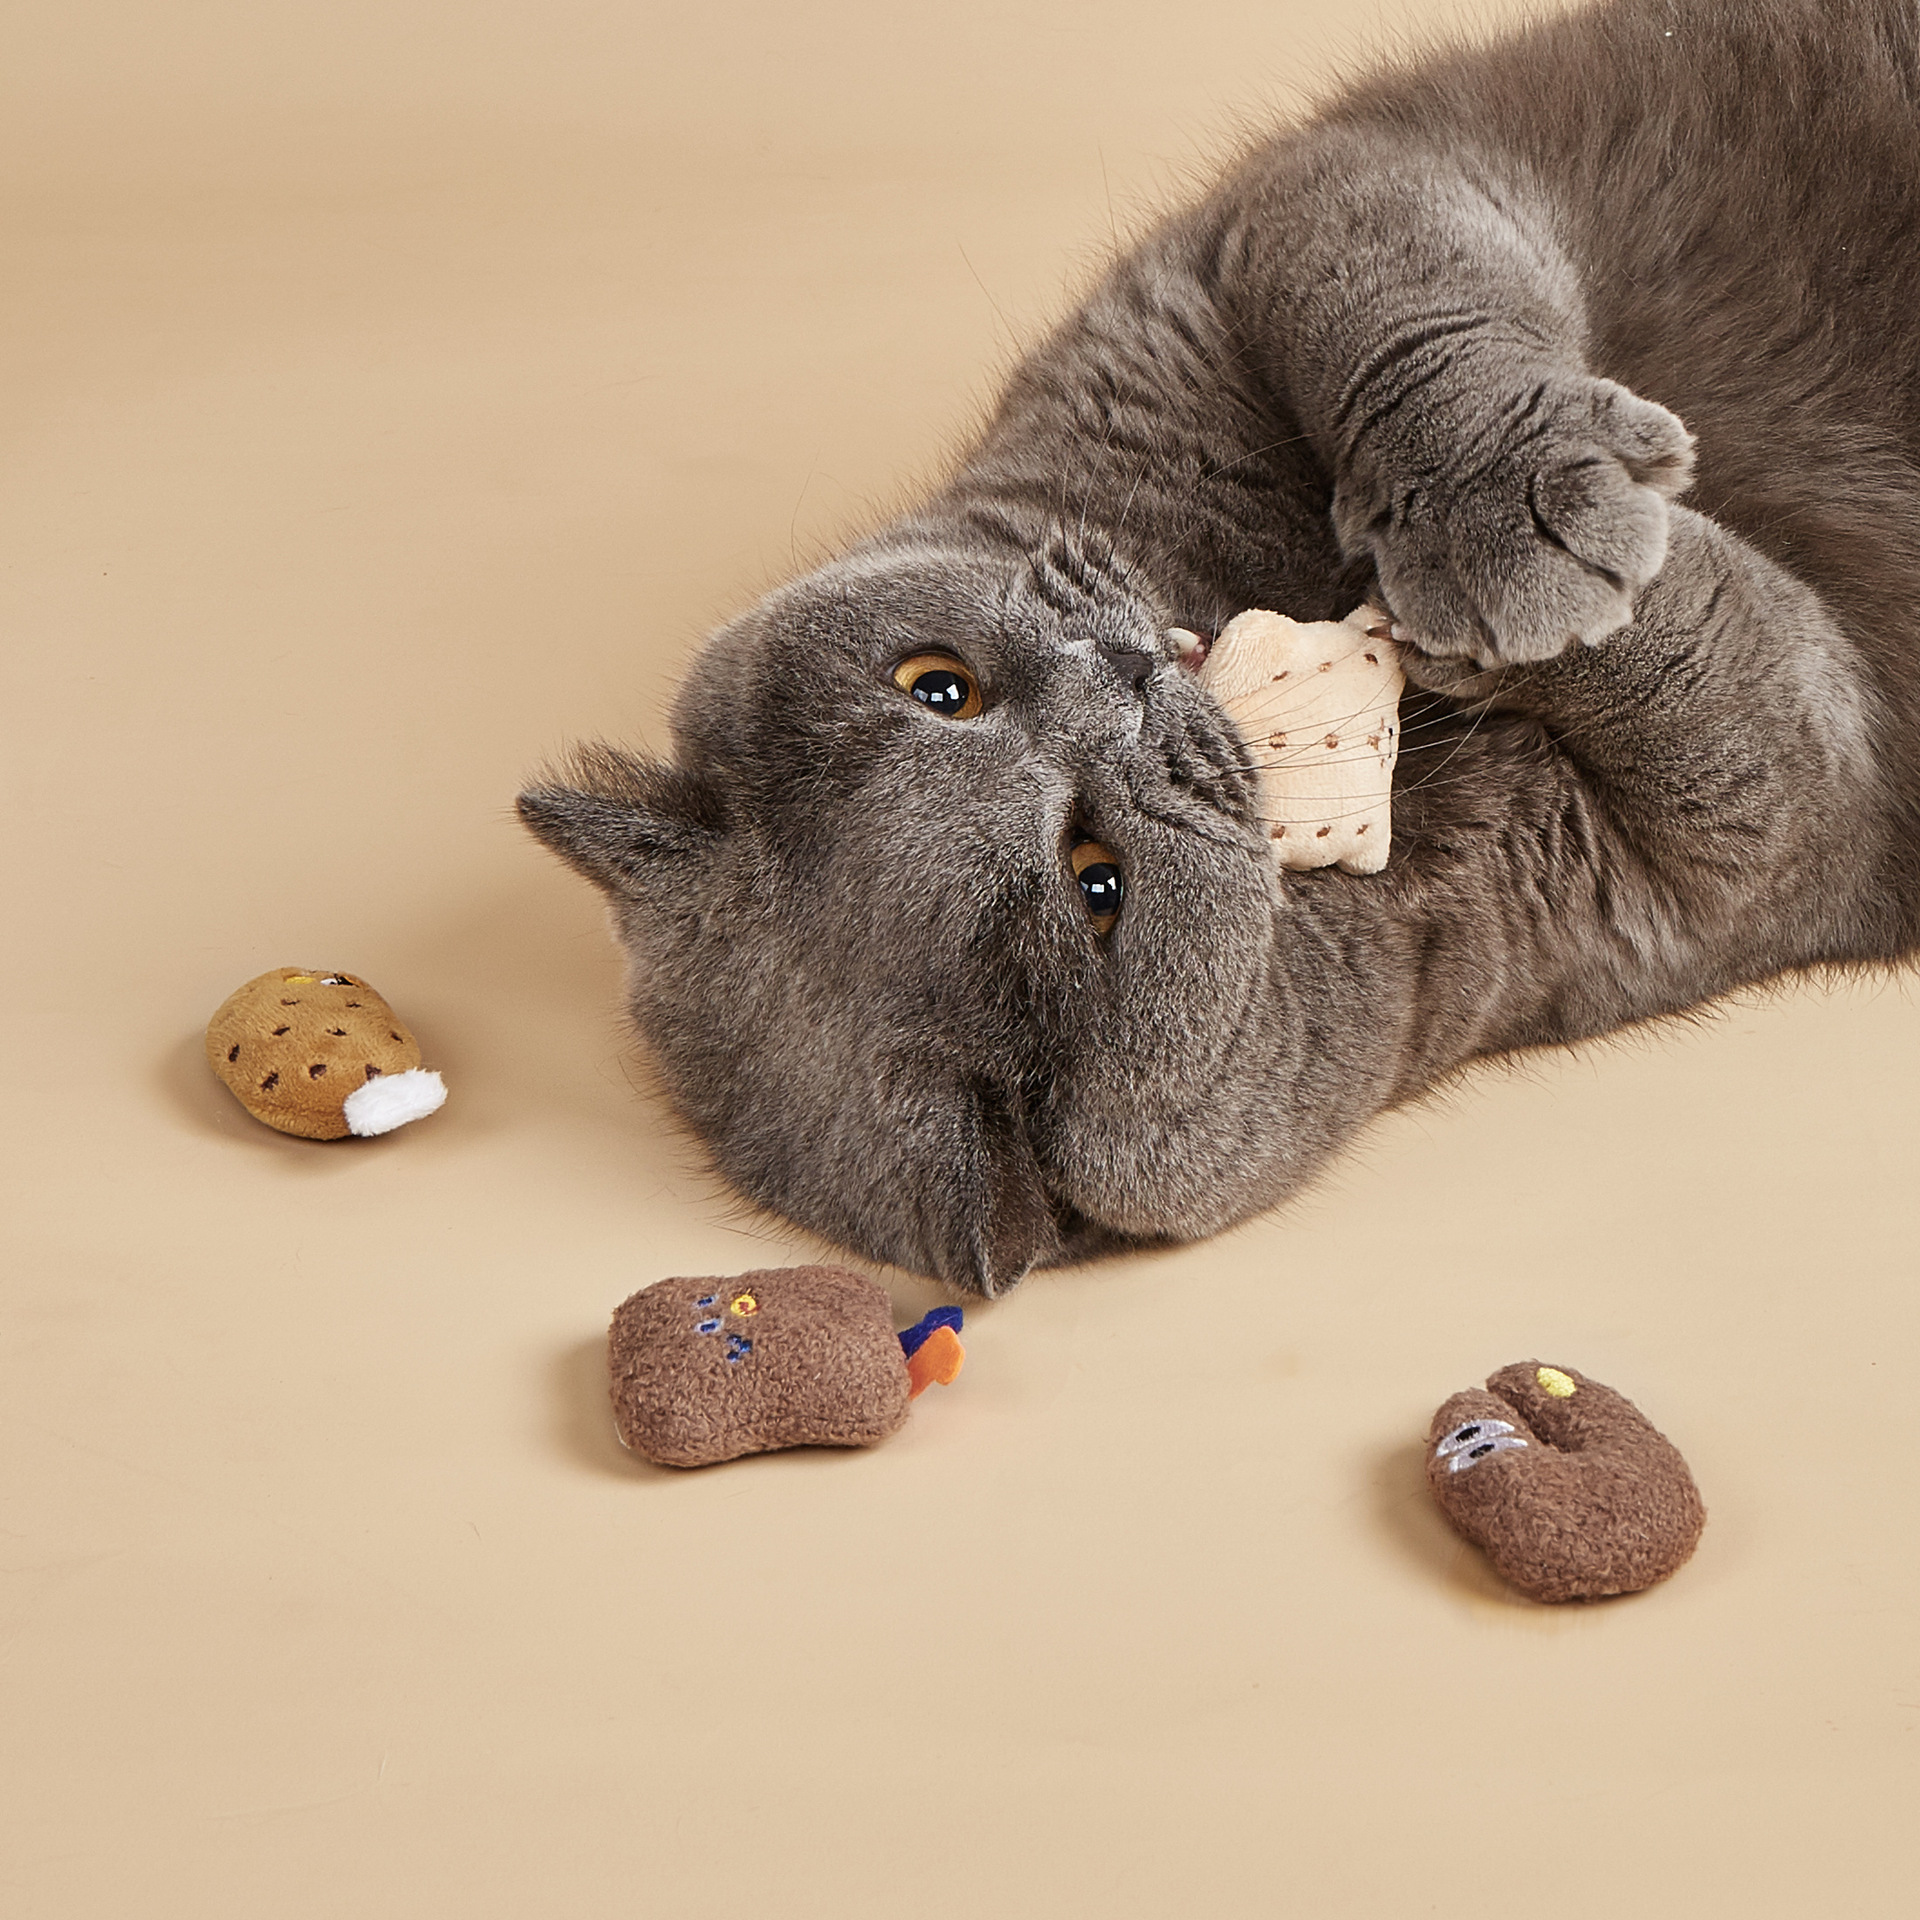  Catnip personalizado de felpa, los mejores juguetes con hierba gatera para gatos, juguetes de la serie Cat Catnip